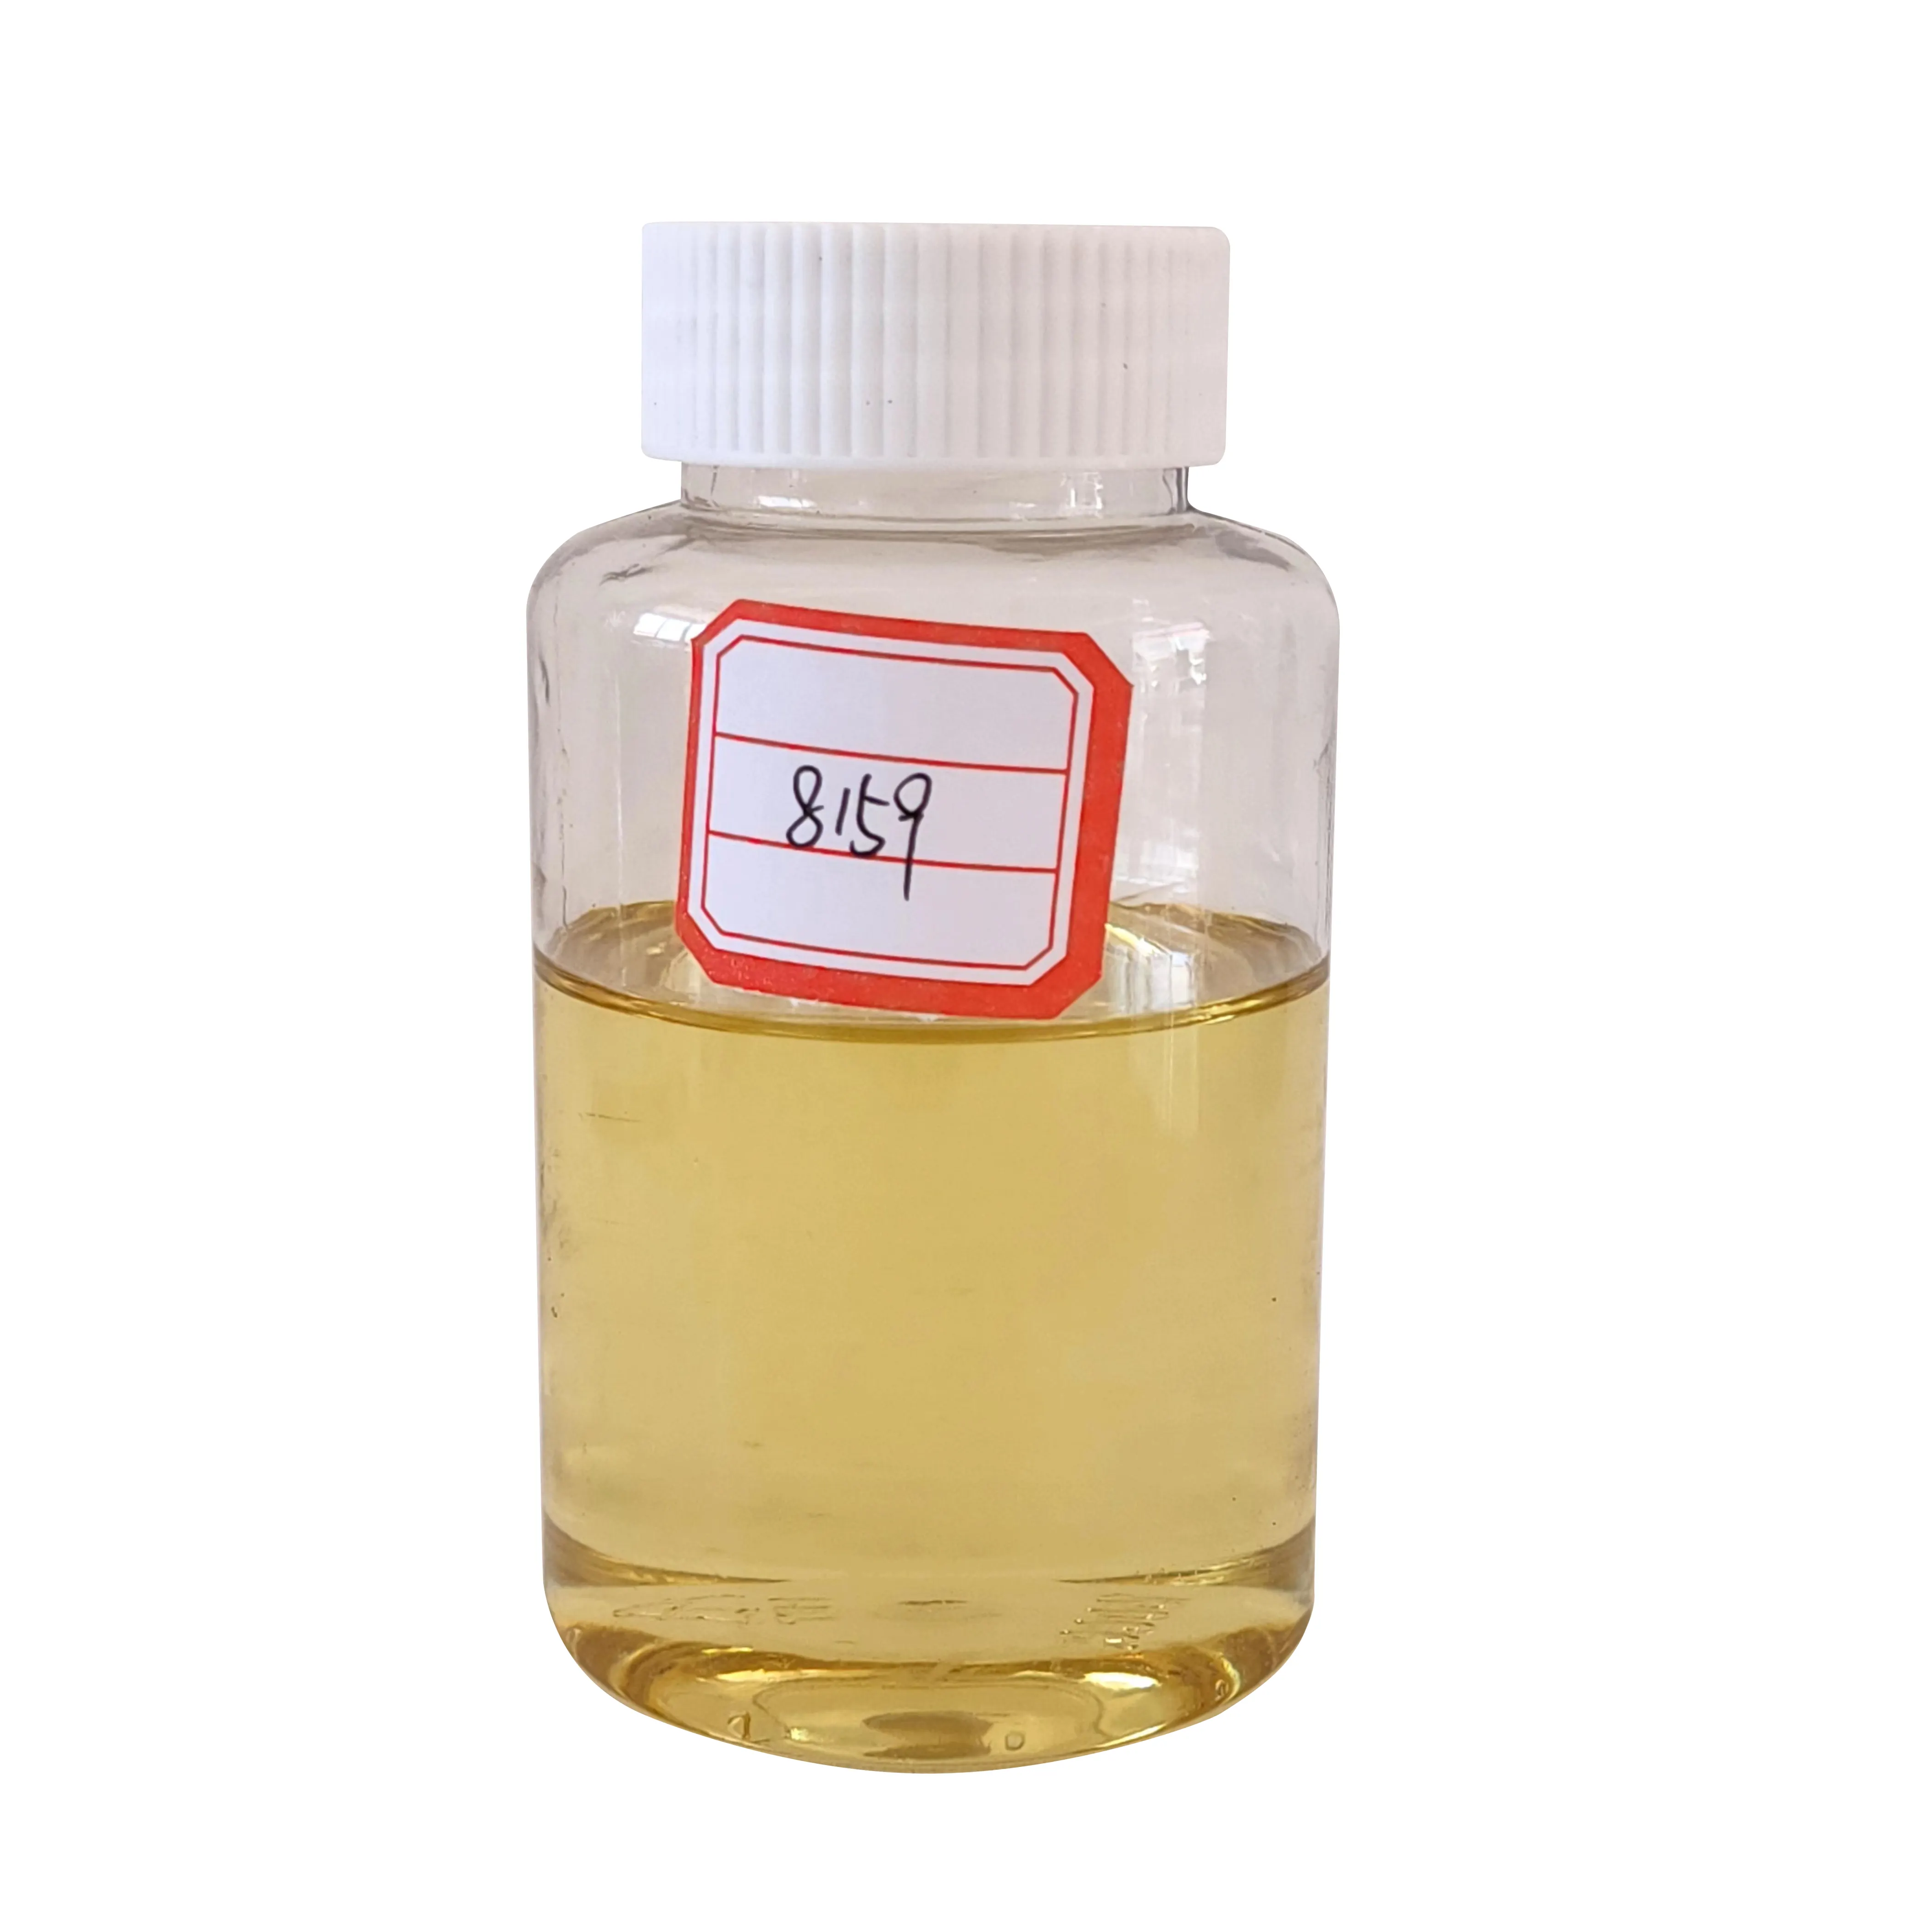 Industrielles hochwertiges leichtes transparentes flüssiges Epoxid härtung mittel Amin-Härter-HB-8159